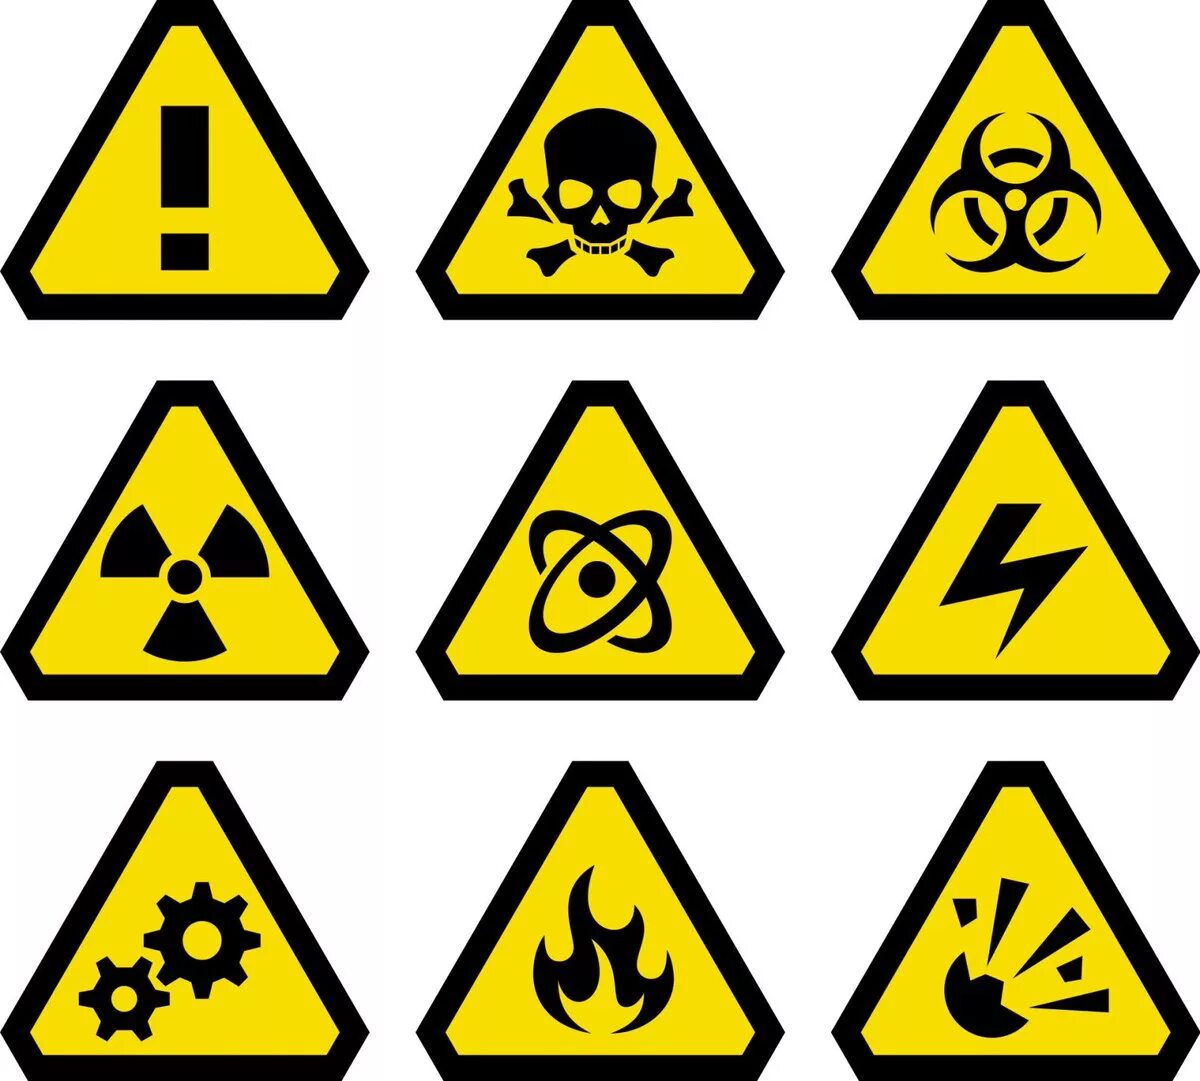 Химические вещества на рабочем месте. Химически опасные вещества знак. Символы опасности. Значок химической опасности. Знаки предупреждающие об опасности.